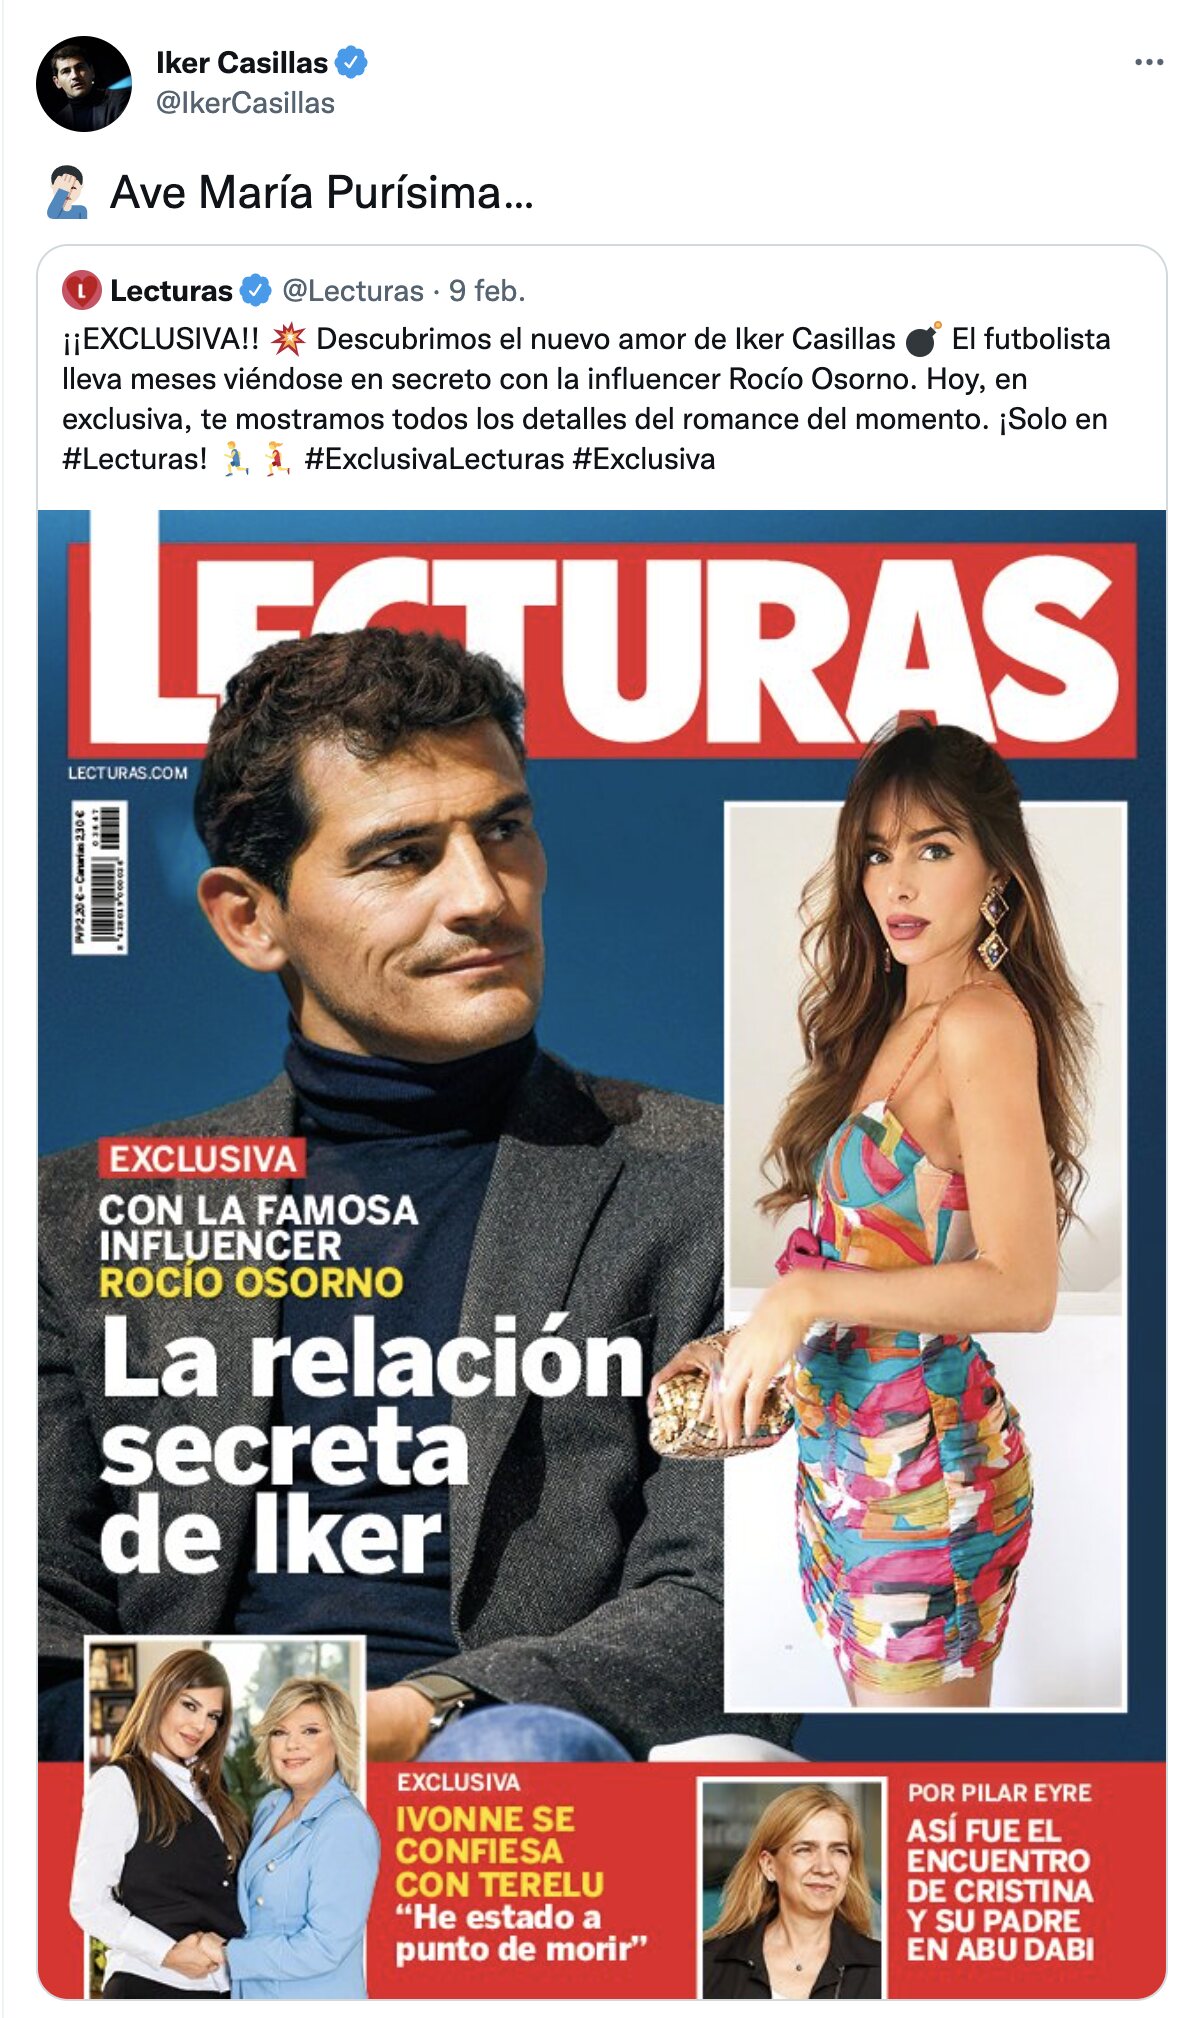 La reacción de Iker Casillas a su supuesta relación/ Foto: Twitter